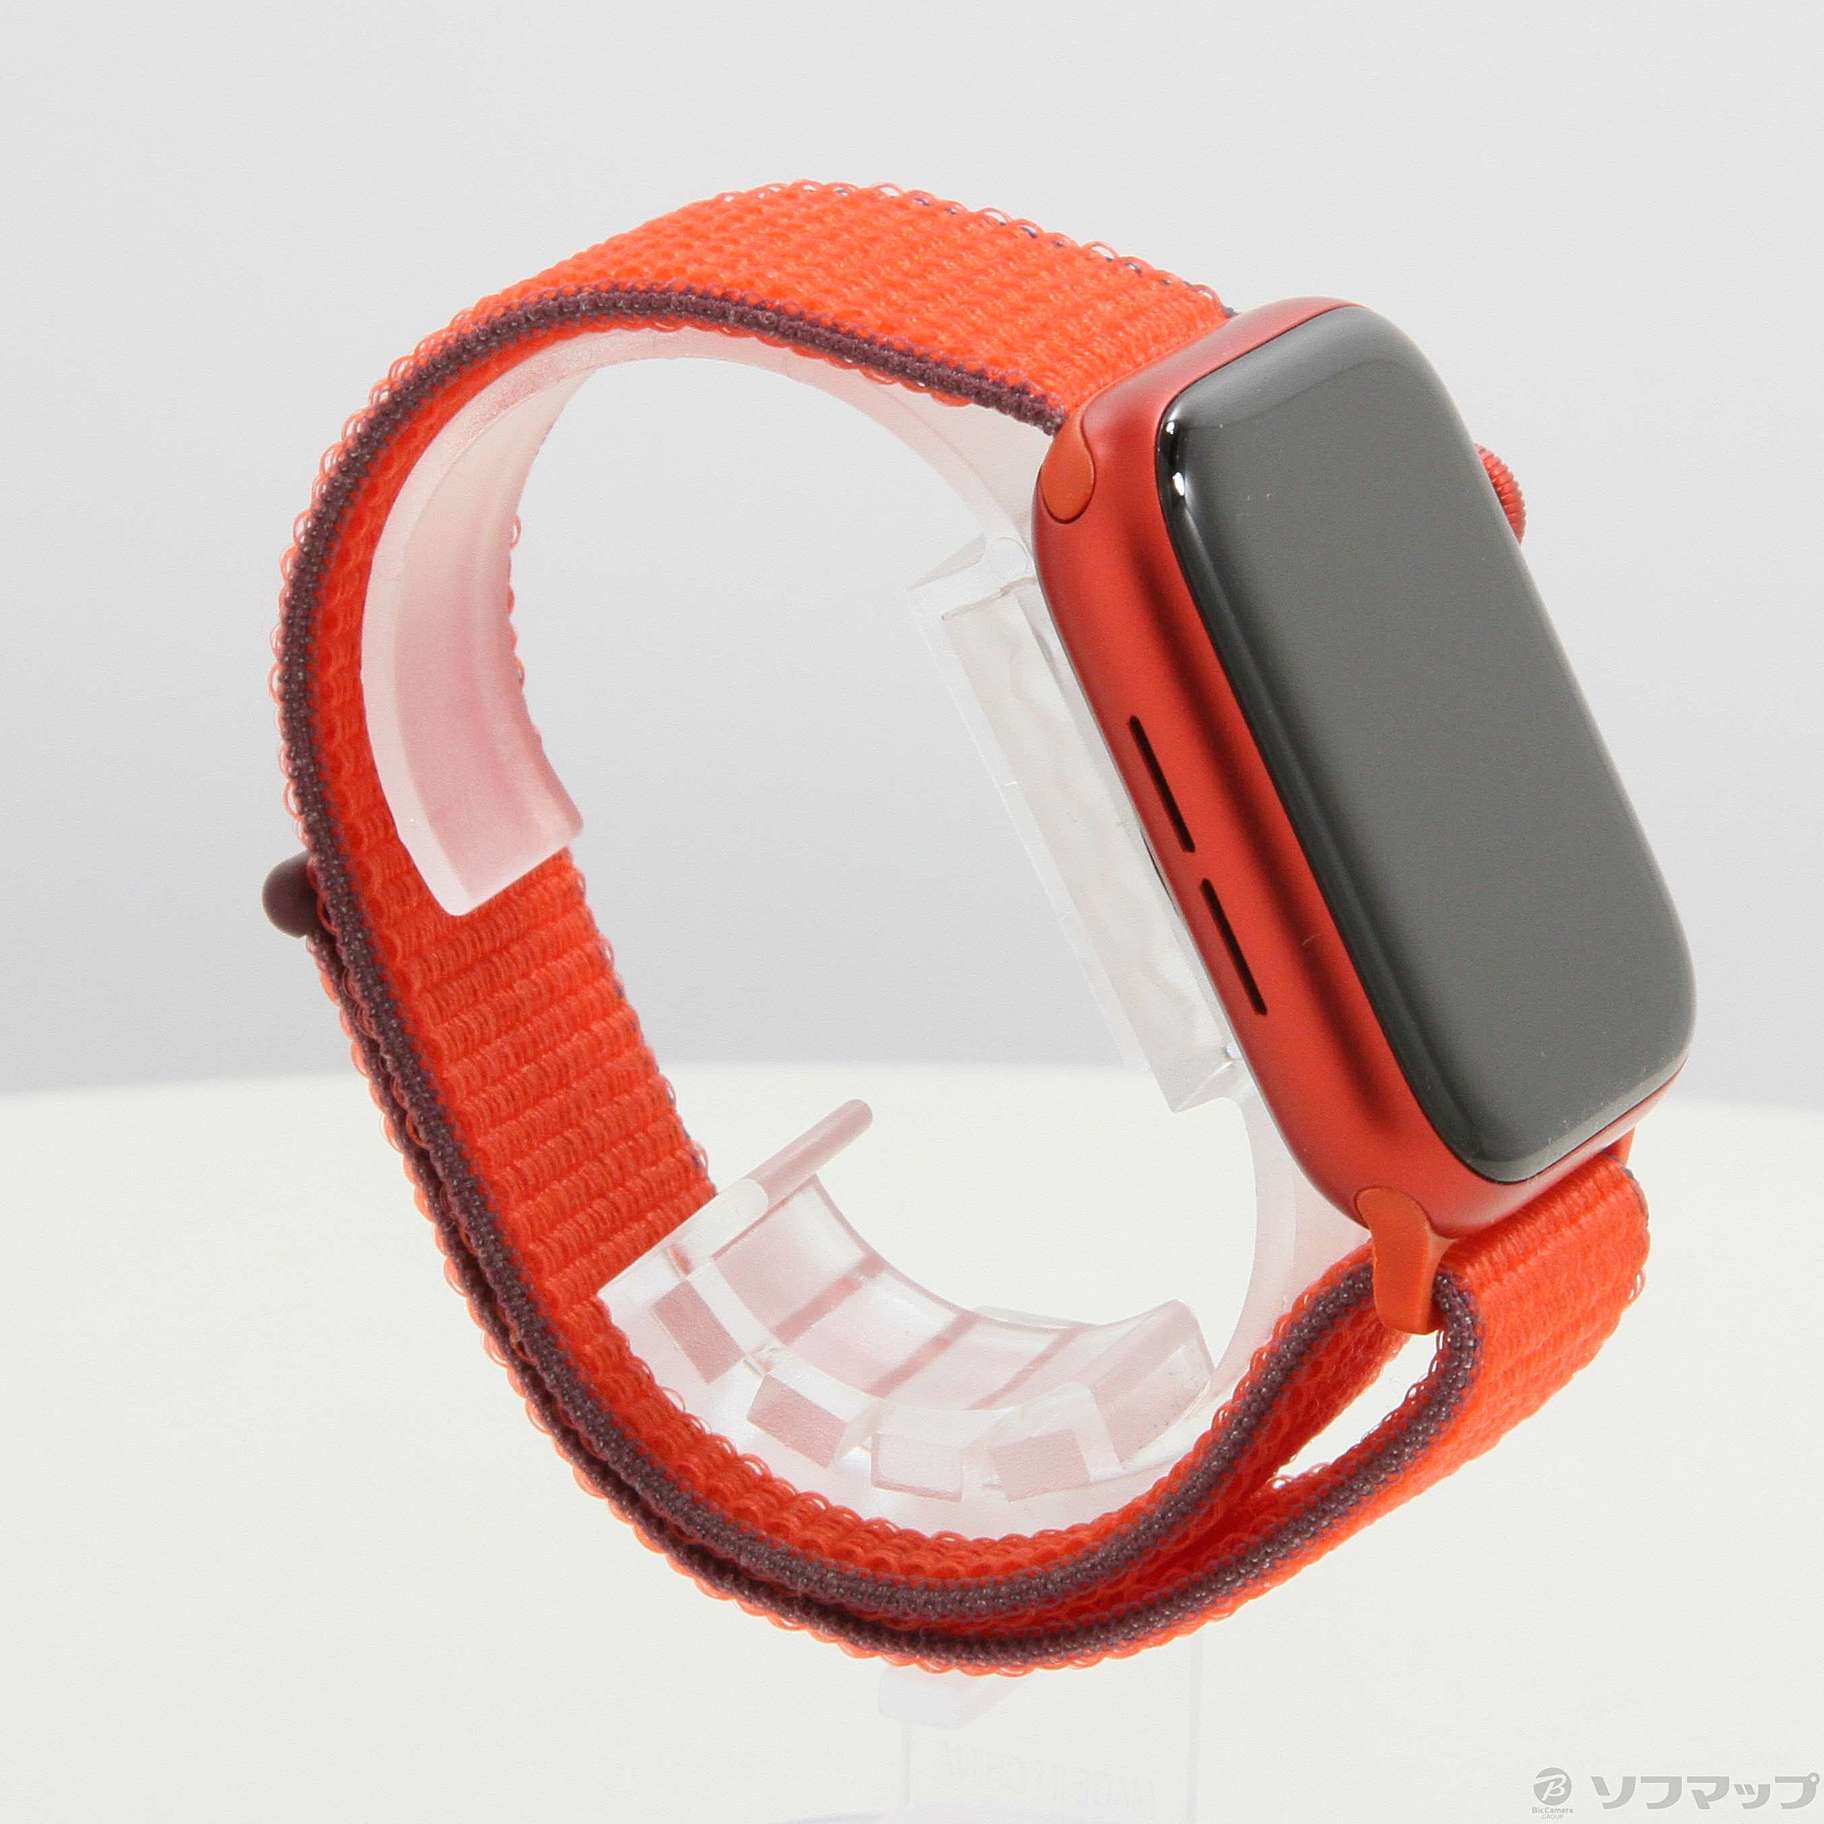 Apple Watch Series 6 GPS 44mm (PRODUCT)REDアルミニウムケース レッドスポーツループ